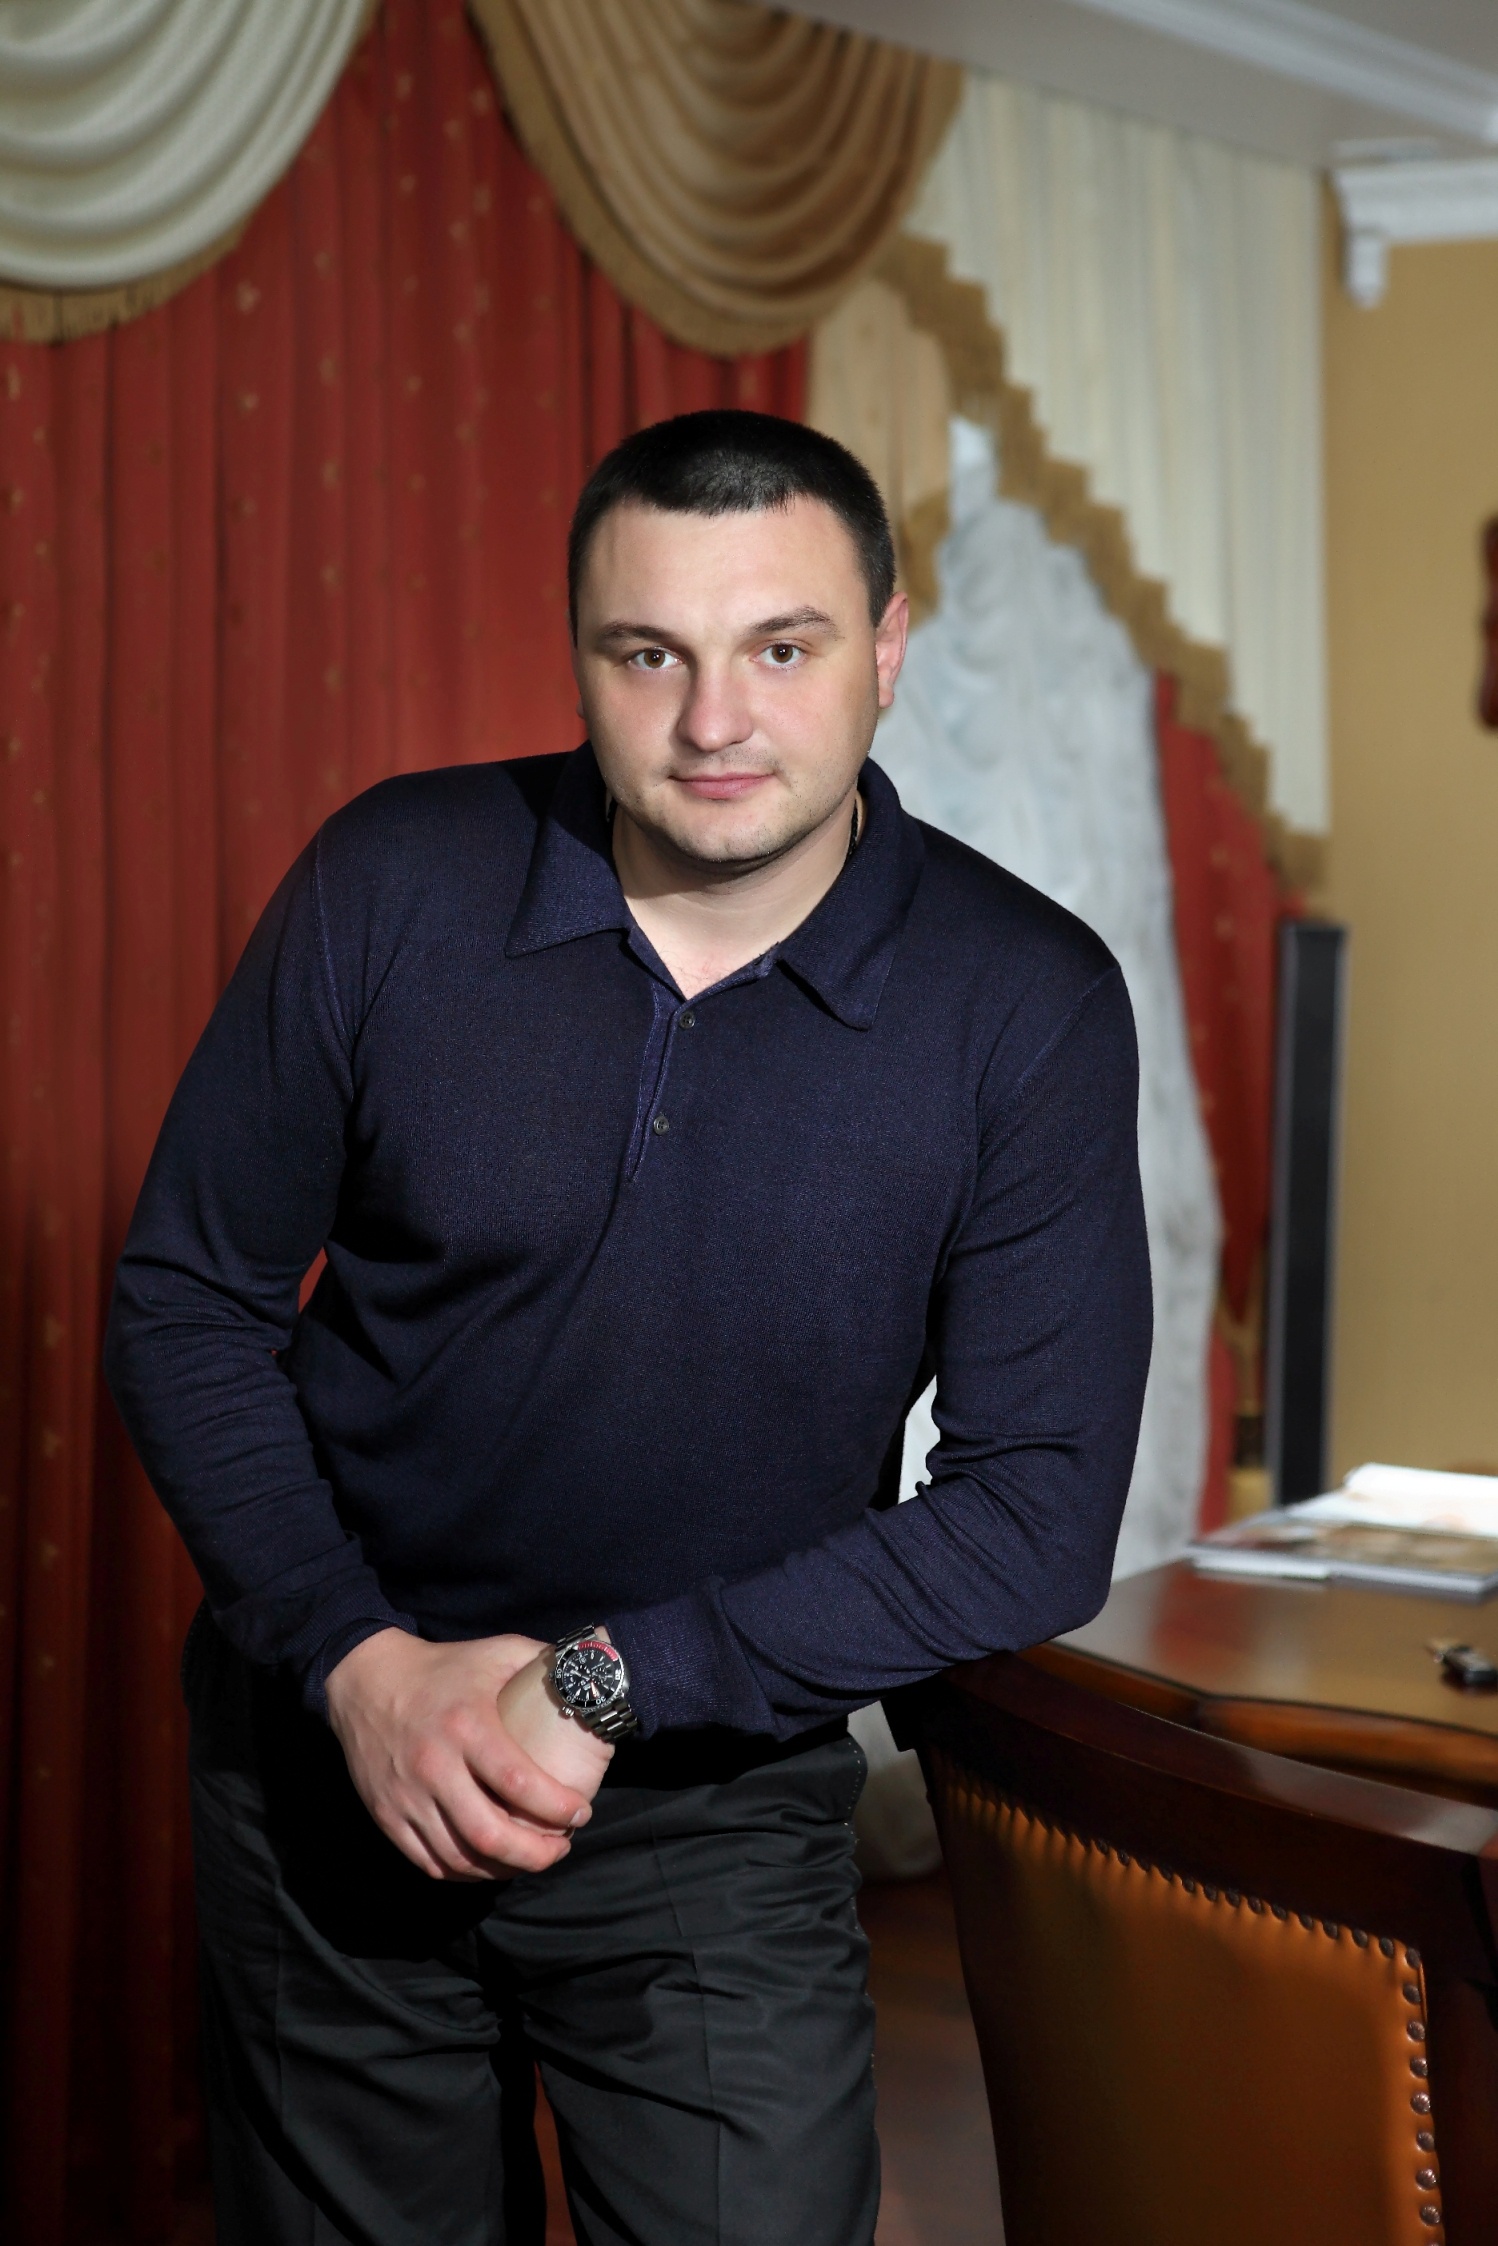 Мнение: Андрей Алеша сможет и запорожскому губернатору советовать и в Донецком городском совете работать